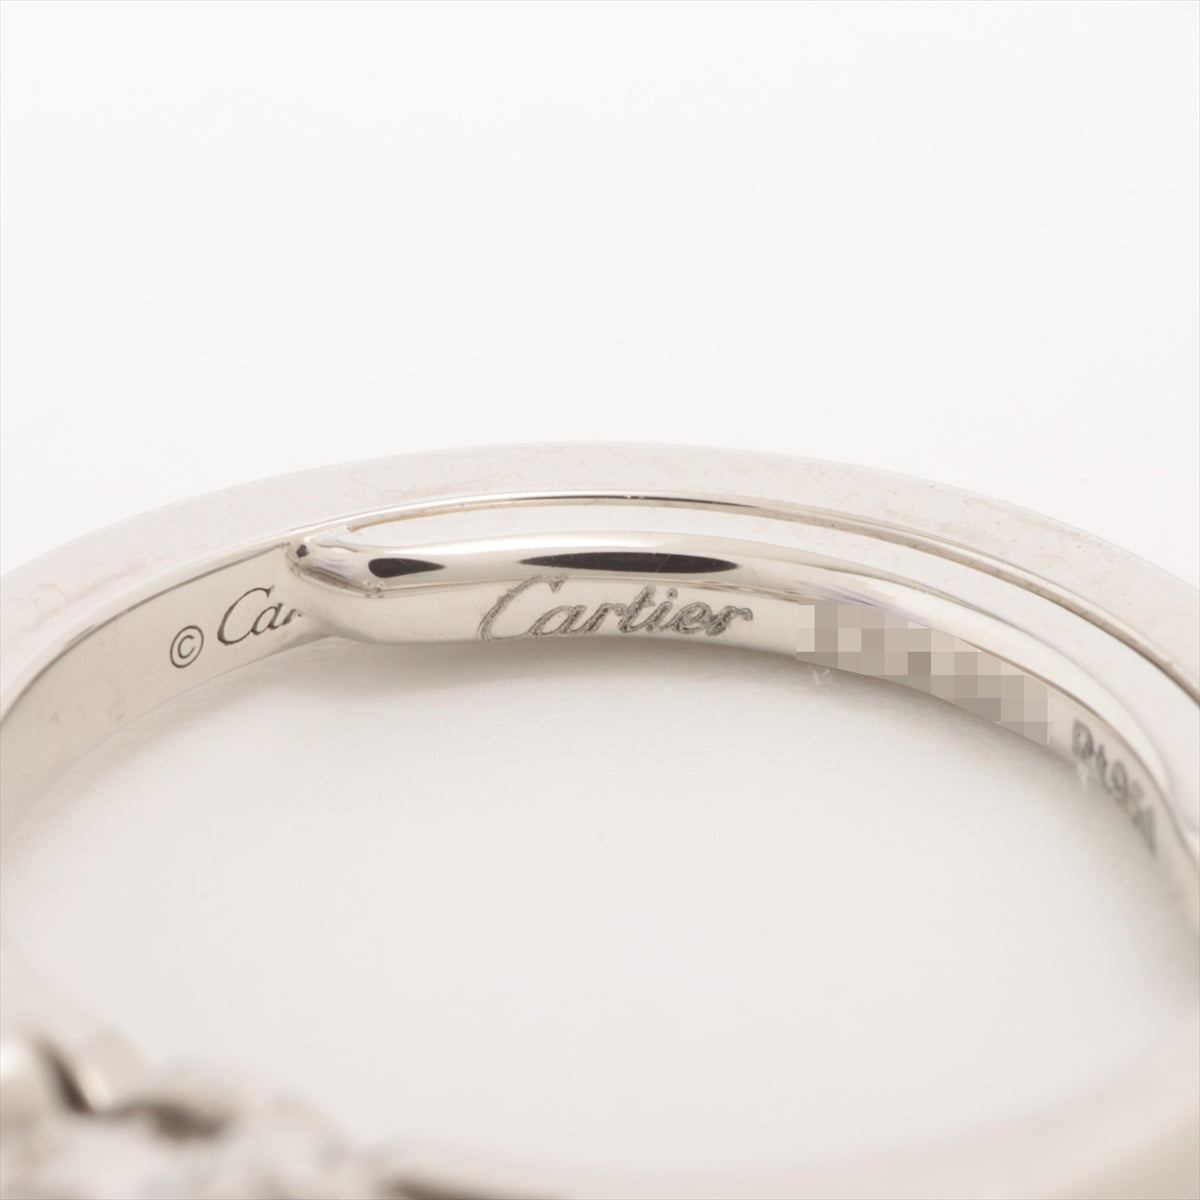 Cartier Ballerina Diamond Ring Pt950 5.3g 0.27 F VVS2 3EX NONE